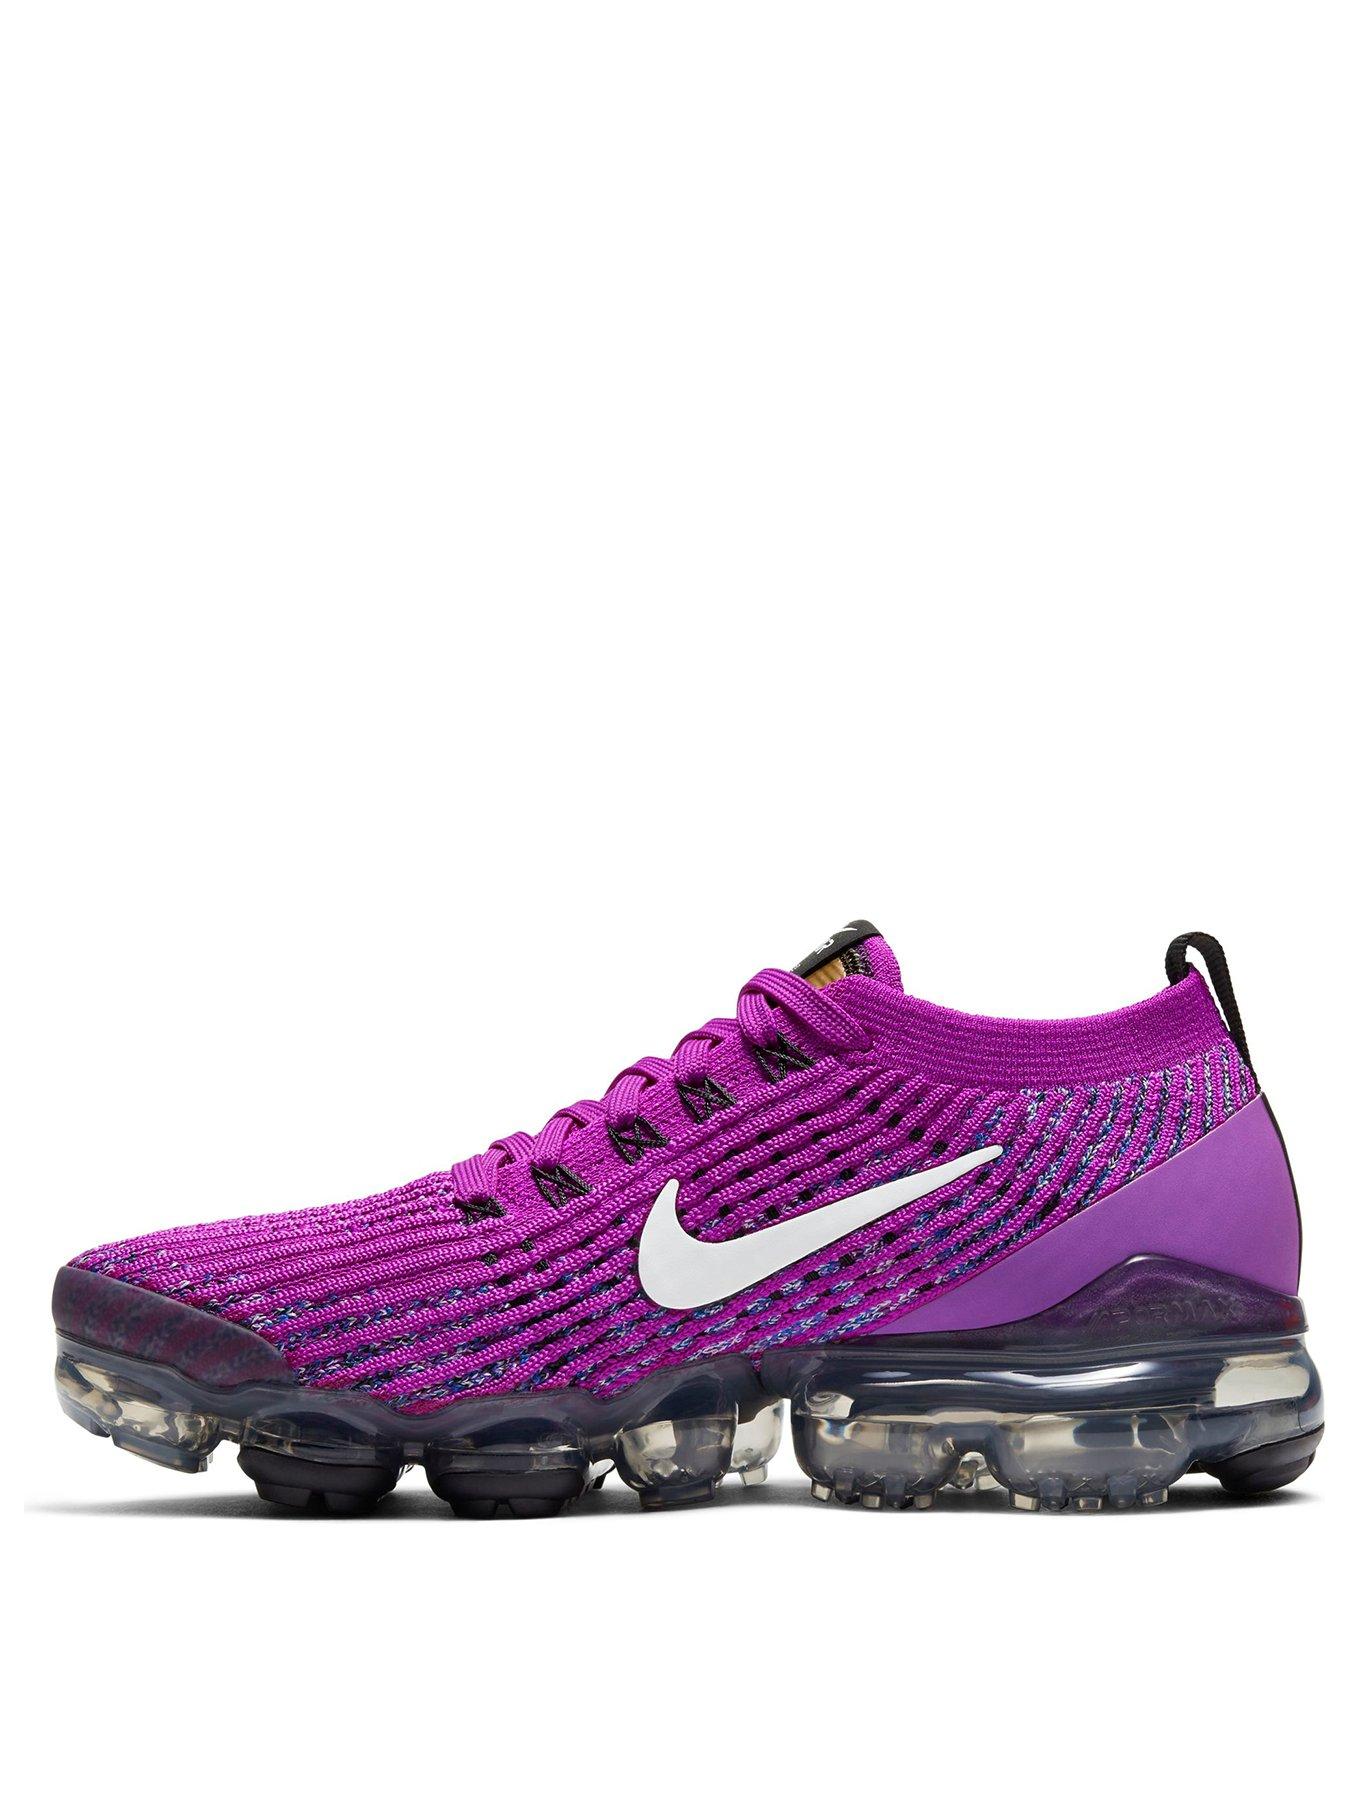 purple vapormax shoes